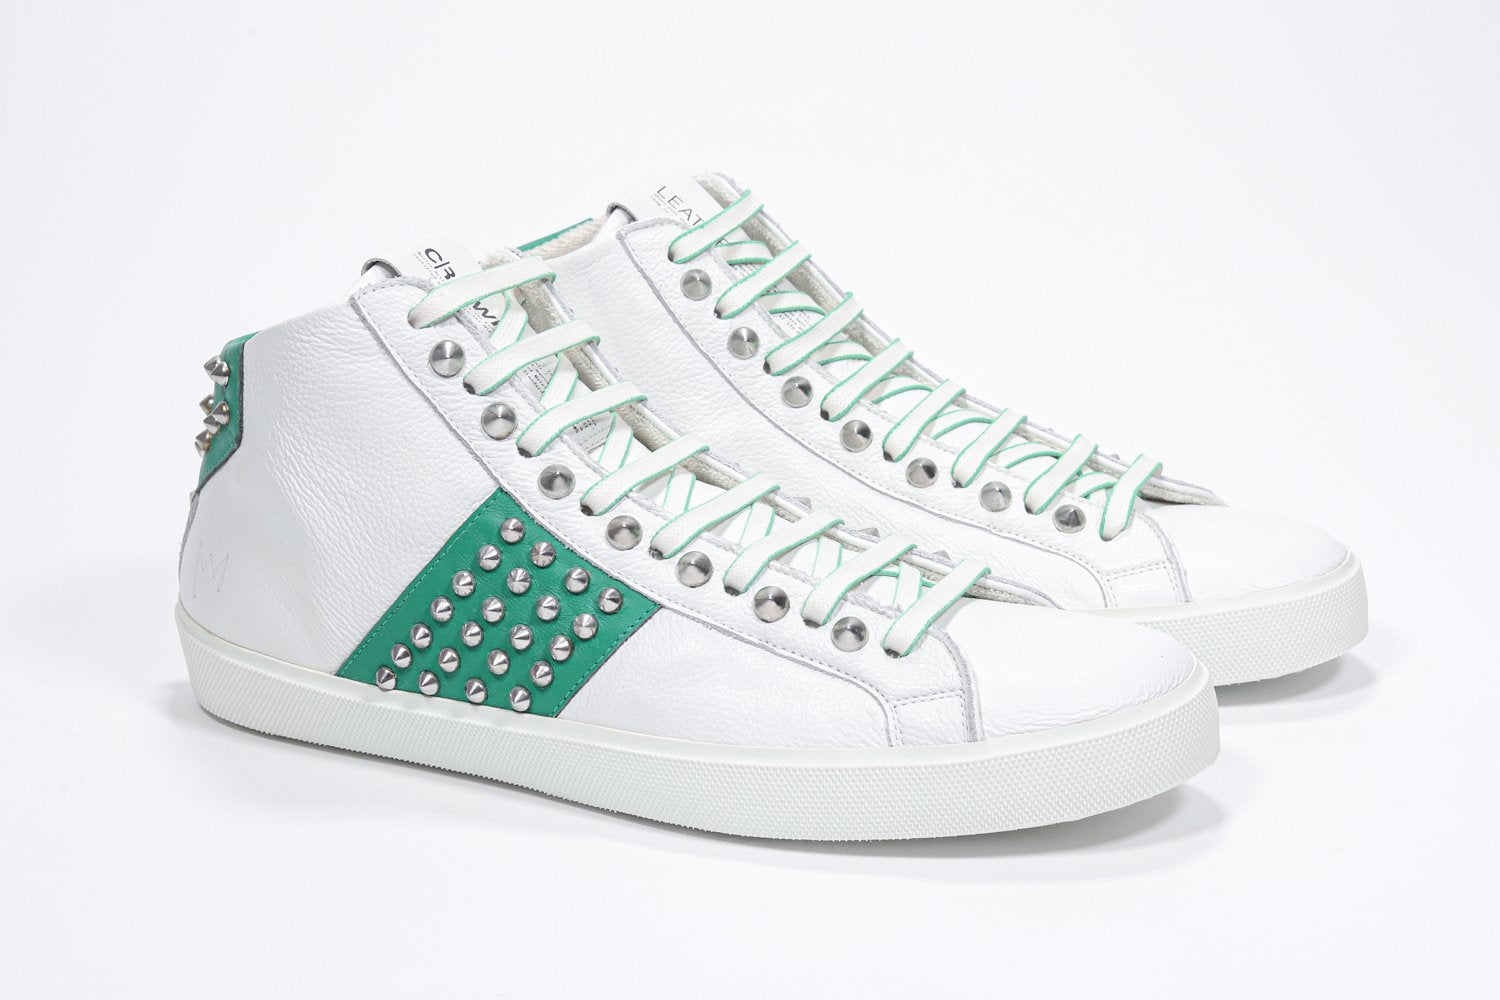 Tre quarti di vista frontale del modello mid top bianco e verde sneaker. Tomaia in pelle con borchie, zip interna e suola in gomma bianca.